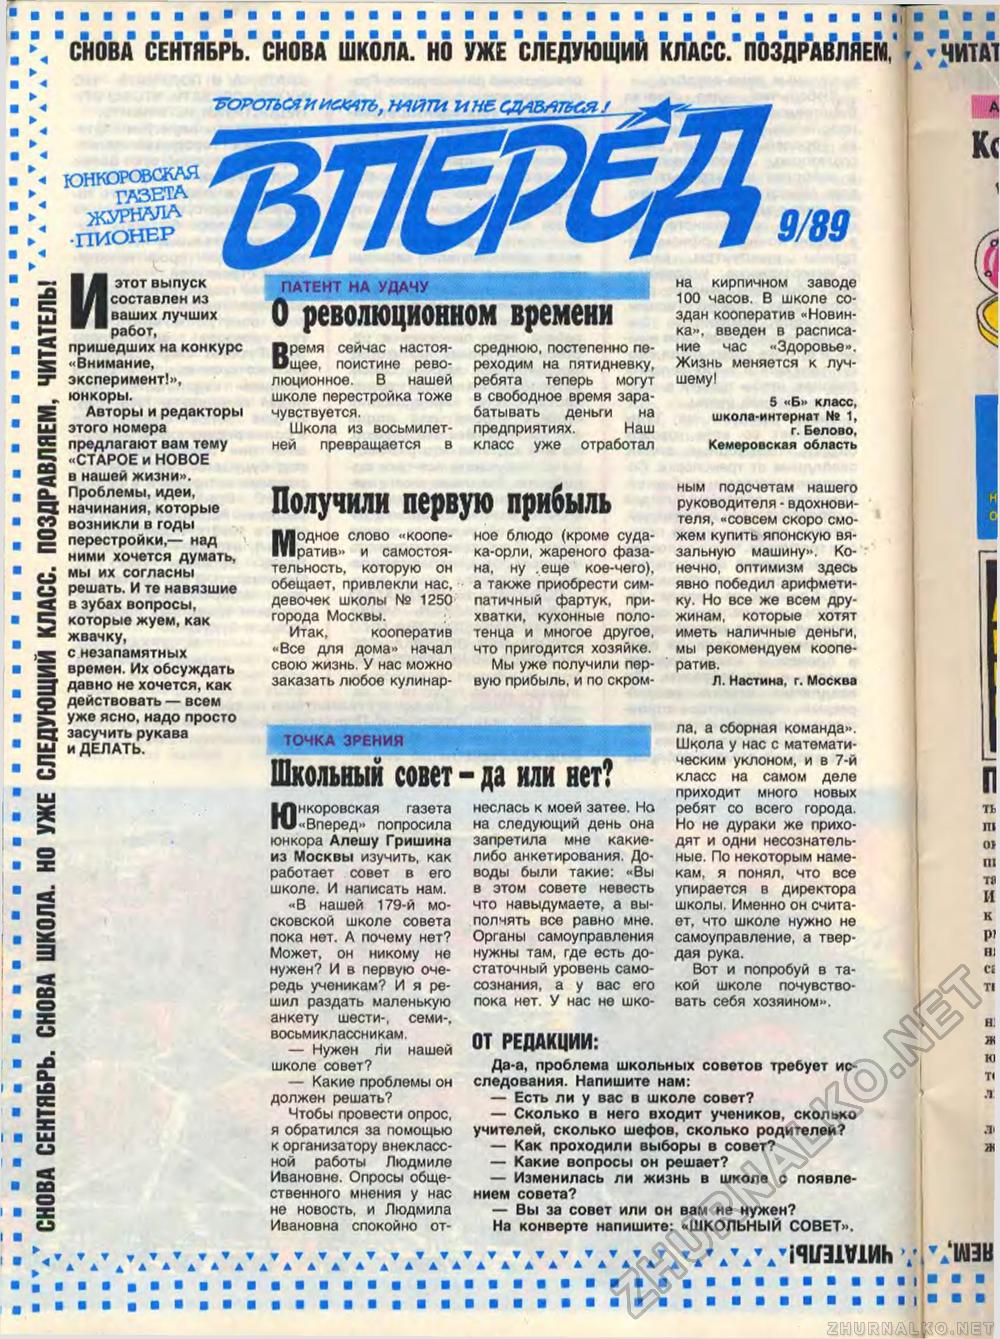  1989-09,  16